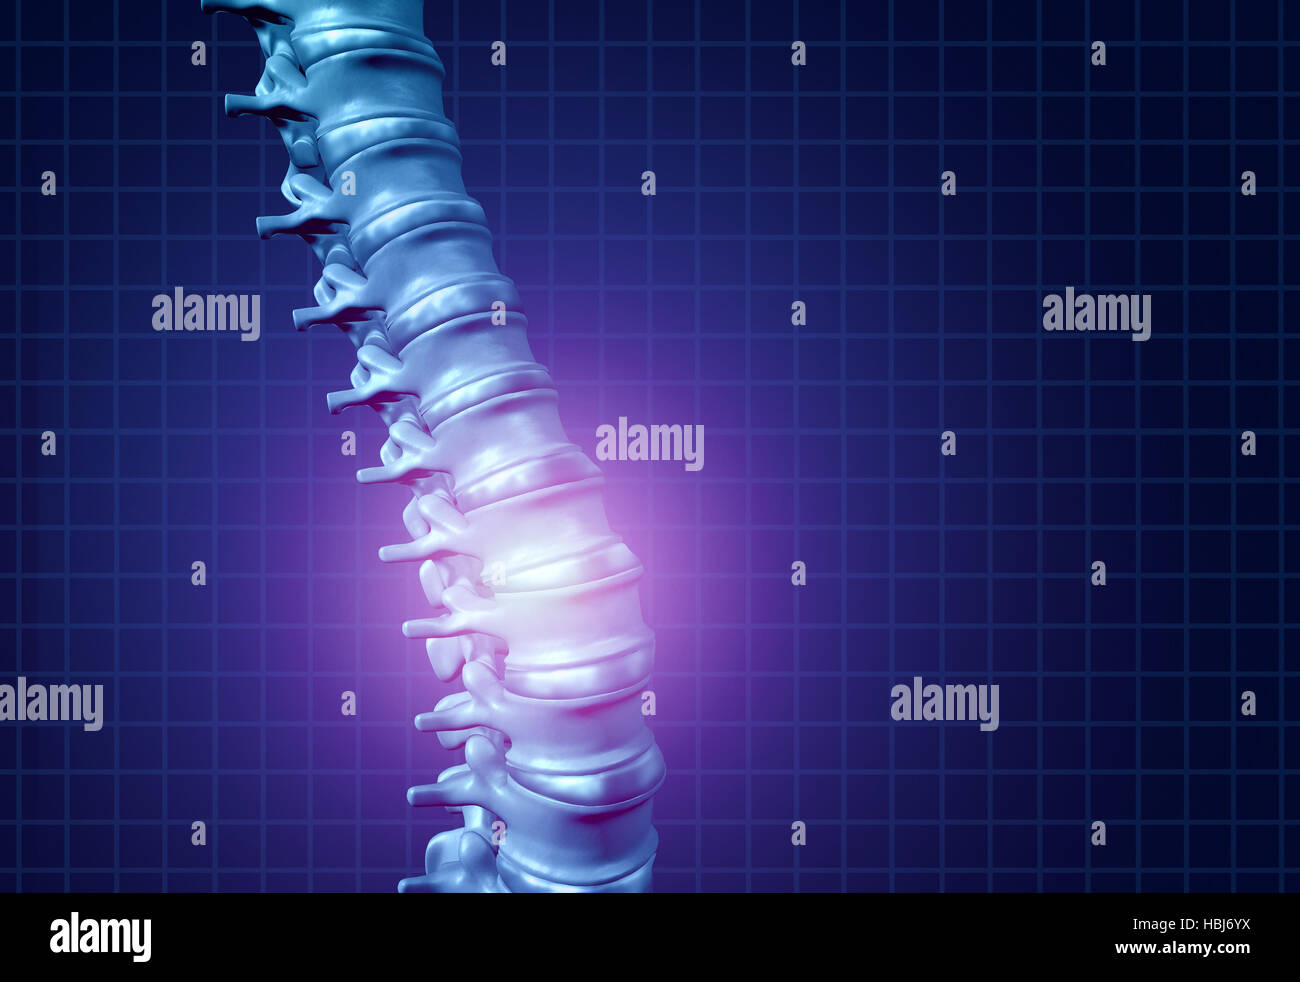 Atrás de la columna vertebral y dolor de espalda como un esqueleto humano que muestra la espina dorsal y la columna vertebral en resplandeciente resaltar como un concepto de cuidado médico para spin Foto de stock